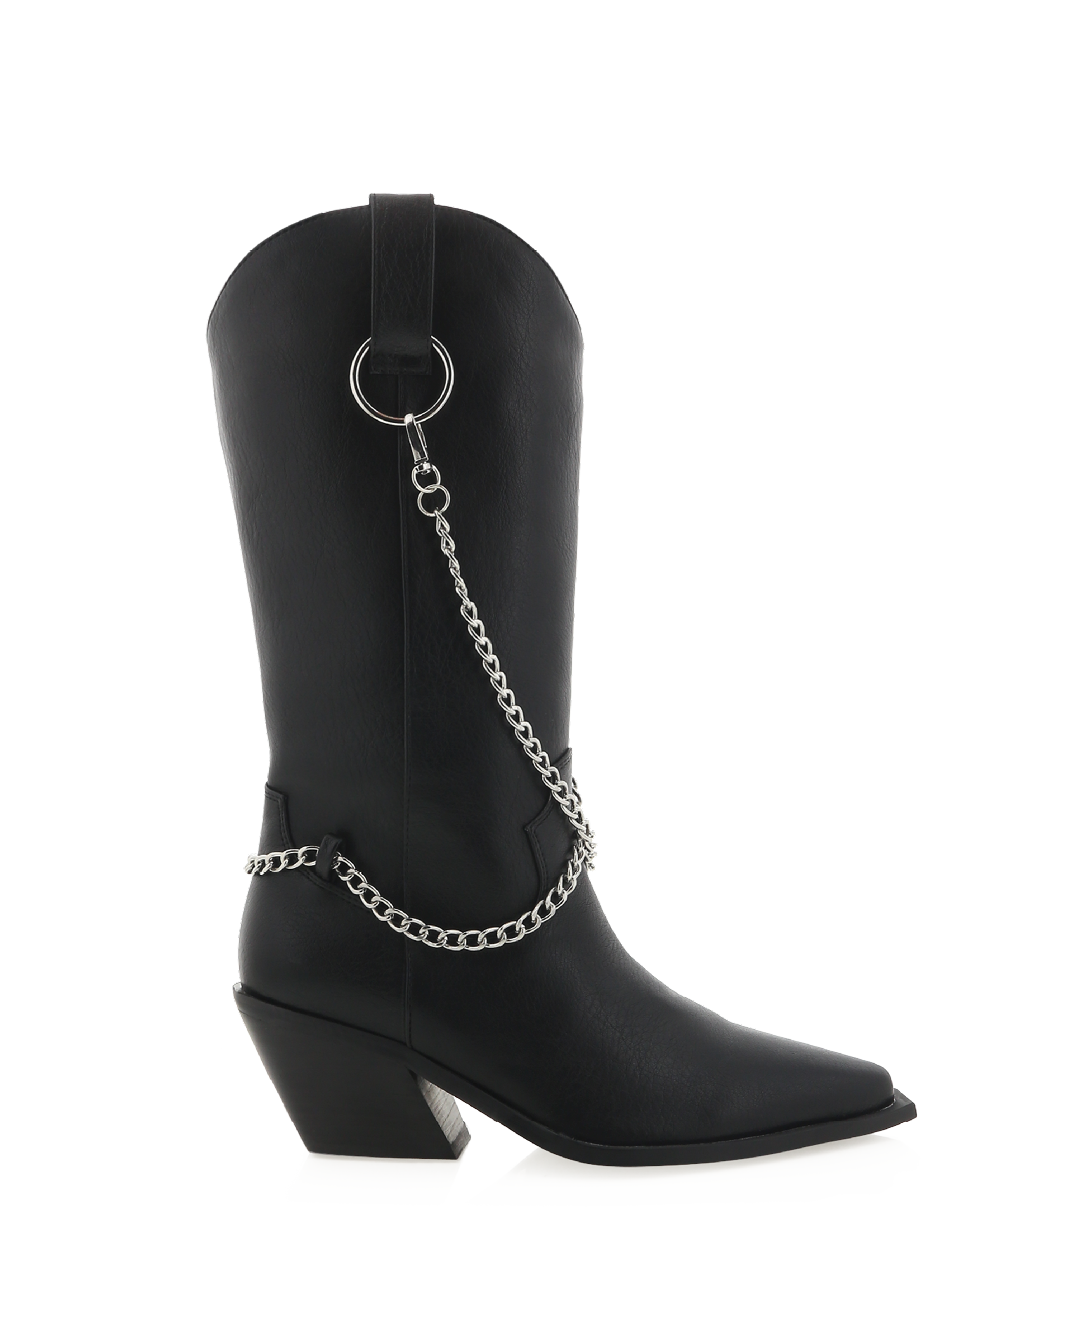 EDWARD - BLACK-Boots-Billini-BILLINI USA